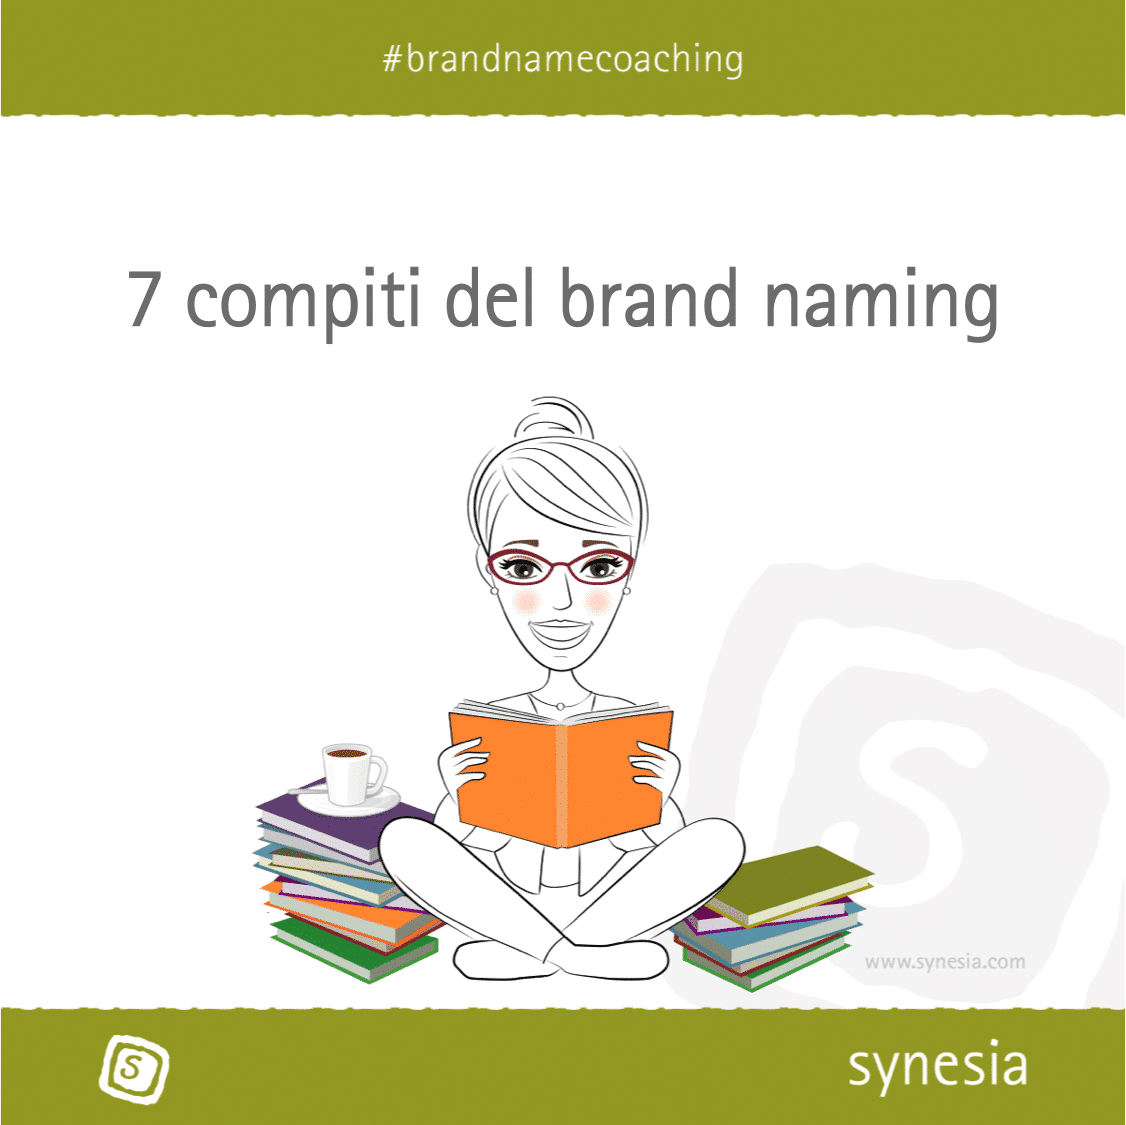 Fumetto di una donna che legge dei libri. Sullo sfondo la scritta "i sette compiti del brand naming".